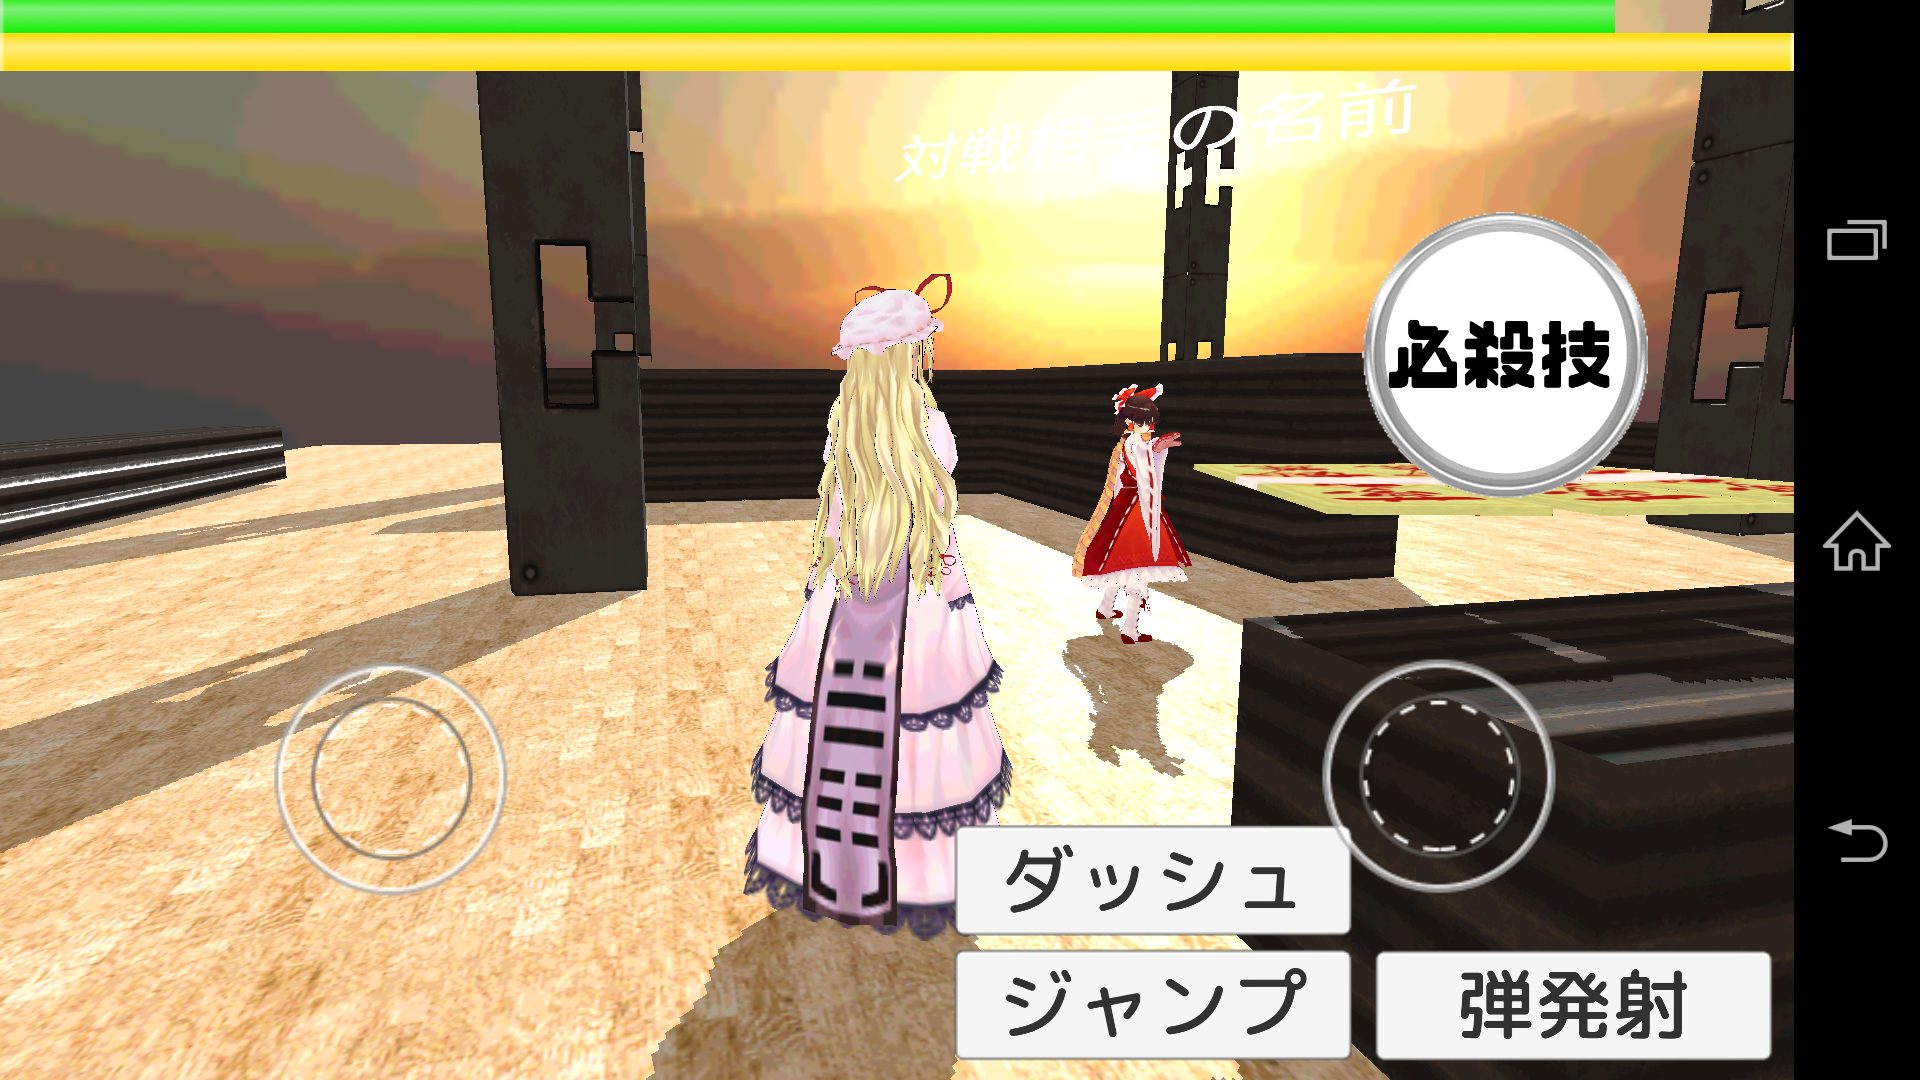 Screenshot 1 of [Touhou] Pertempuran Touhou Online 4